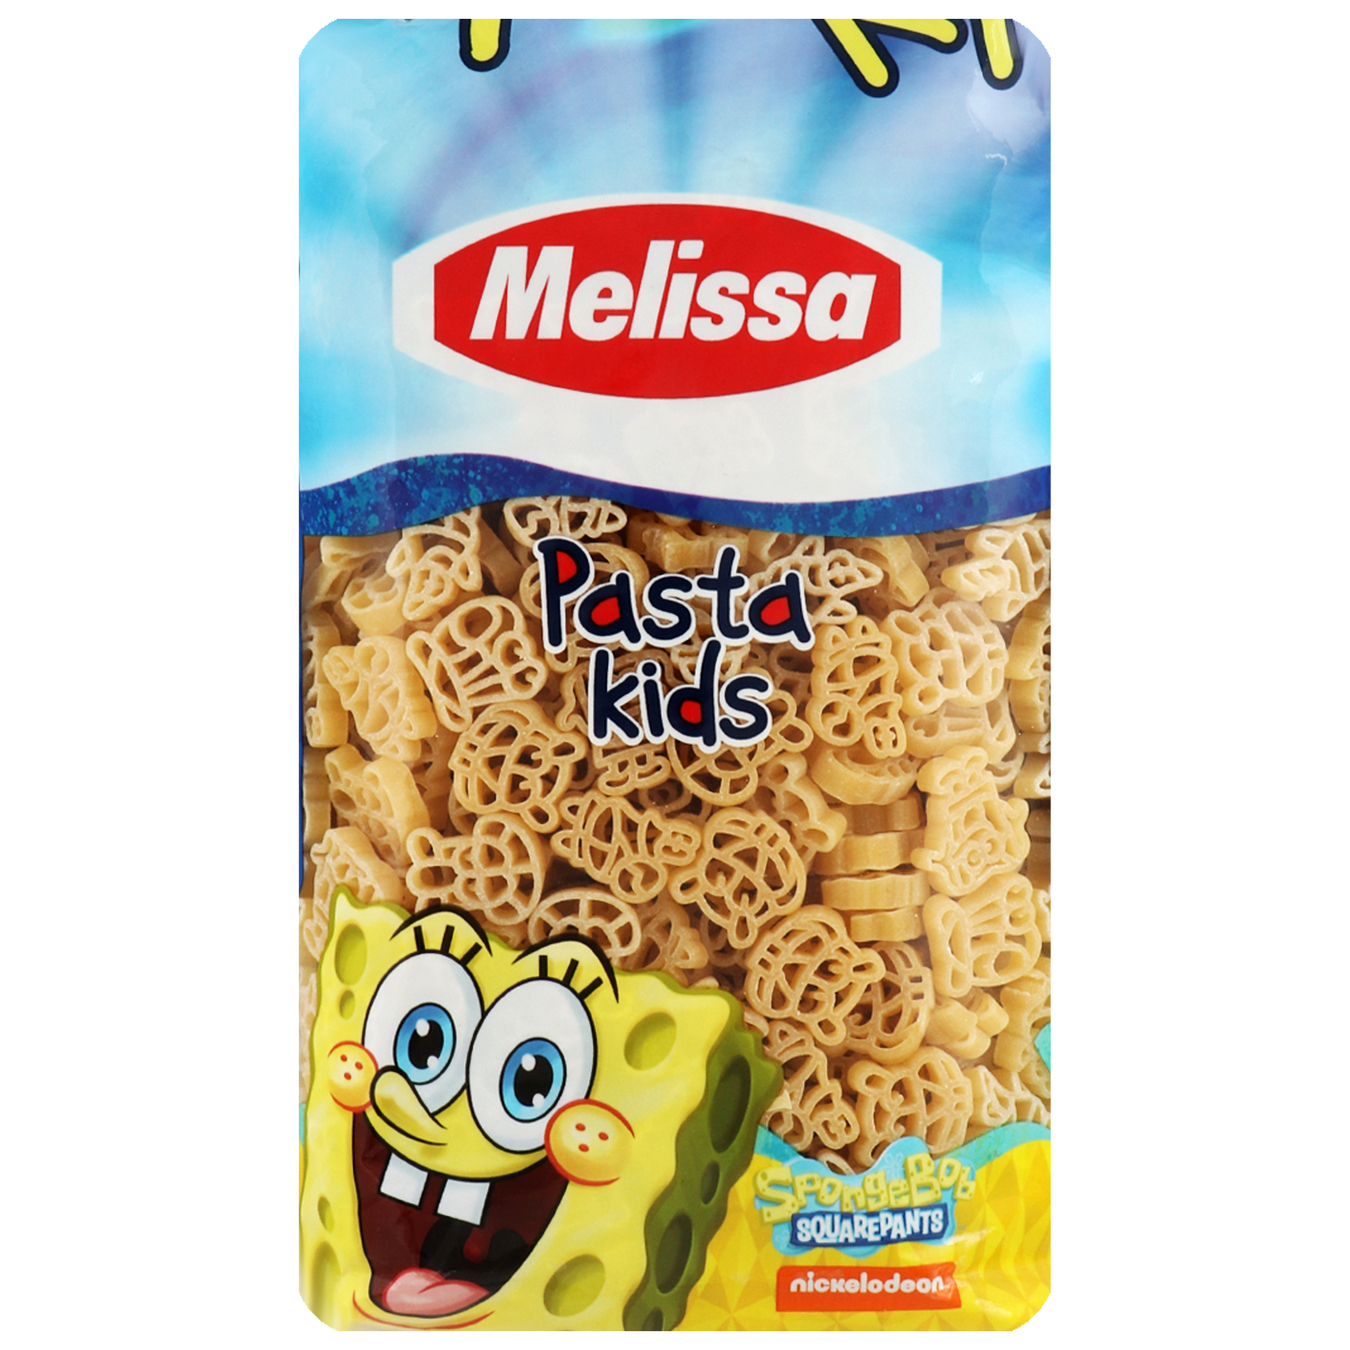 Melissa SpongeBob SquarePants Kids Pasta 500g